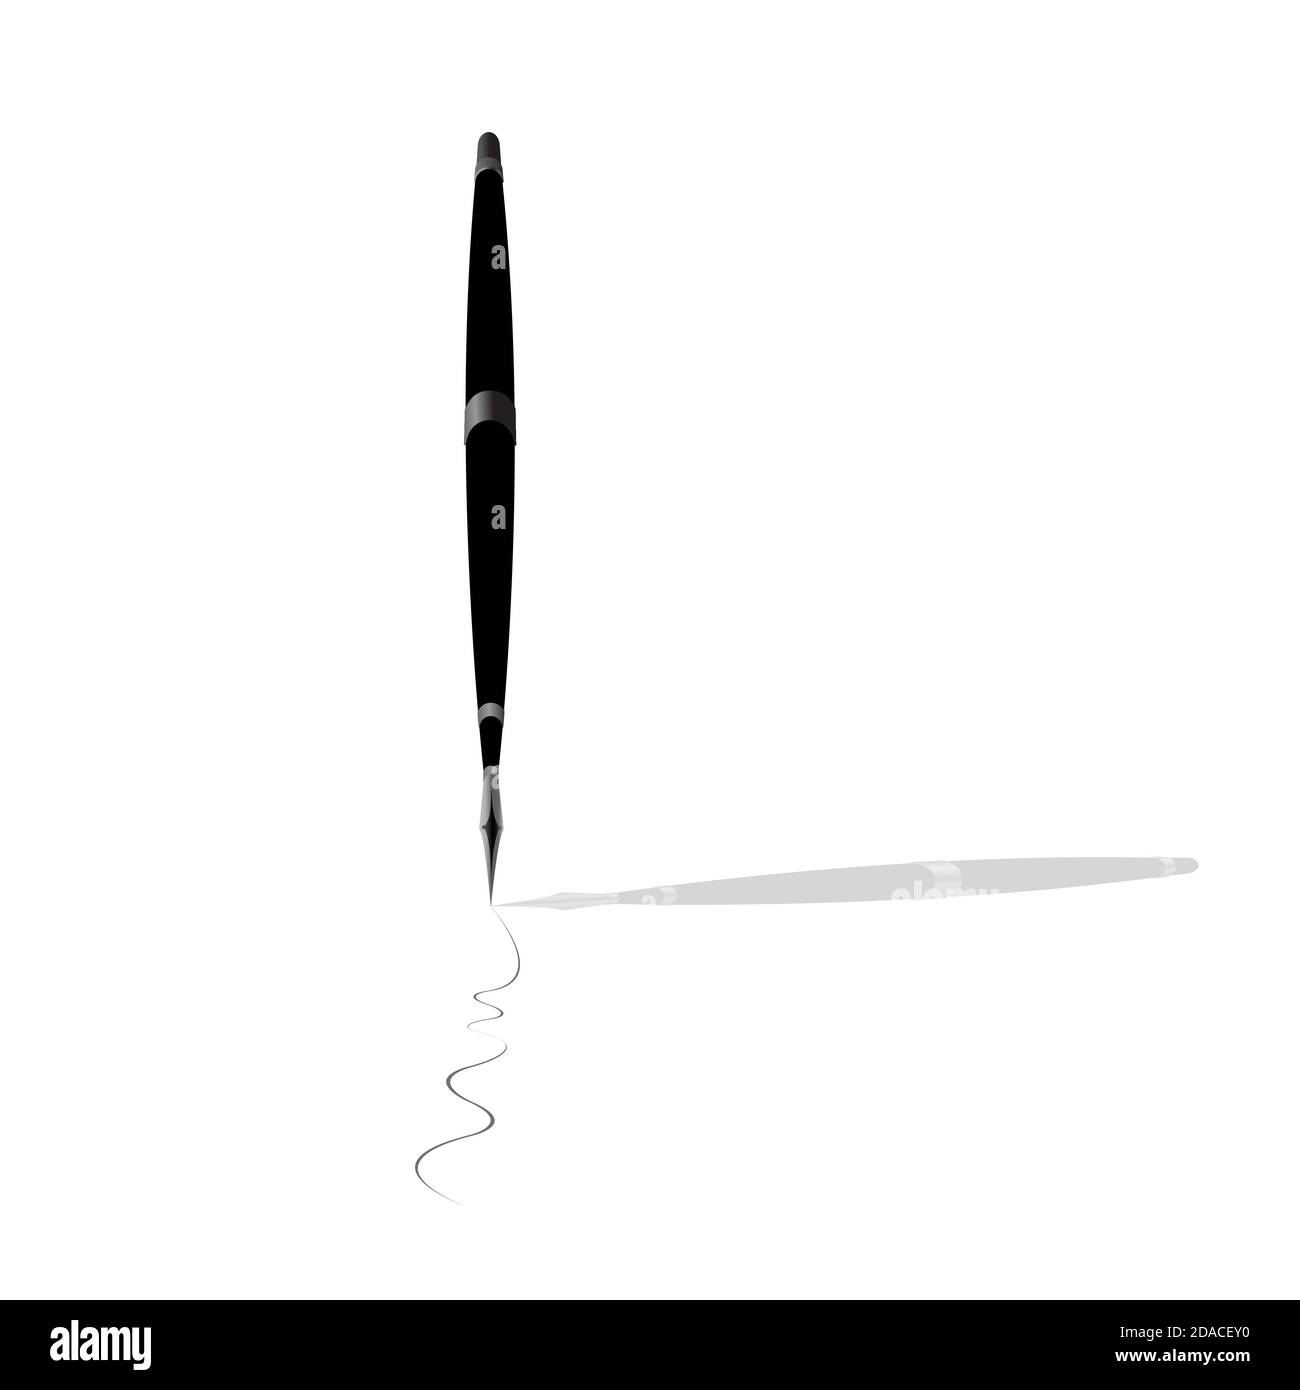 Stylo plume de couleur noire avec ligne de dessin activée papier sur fond blanc Illustration de Vecteur